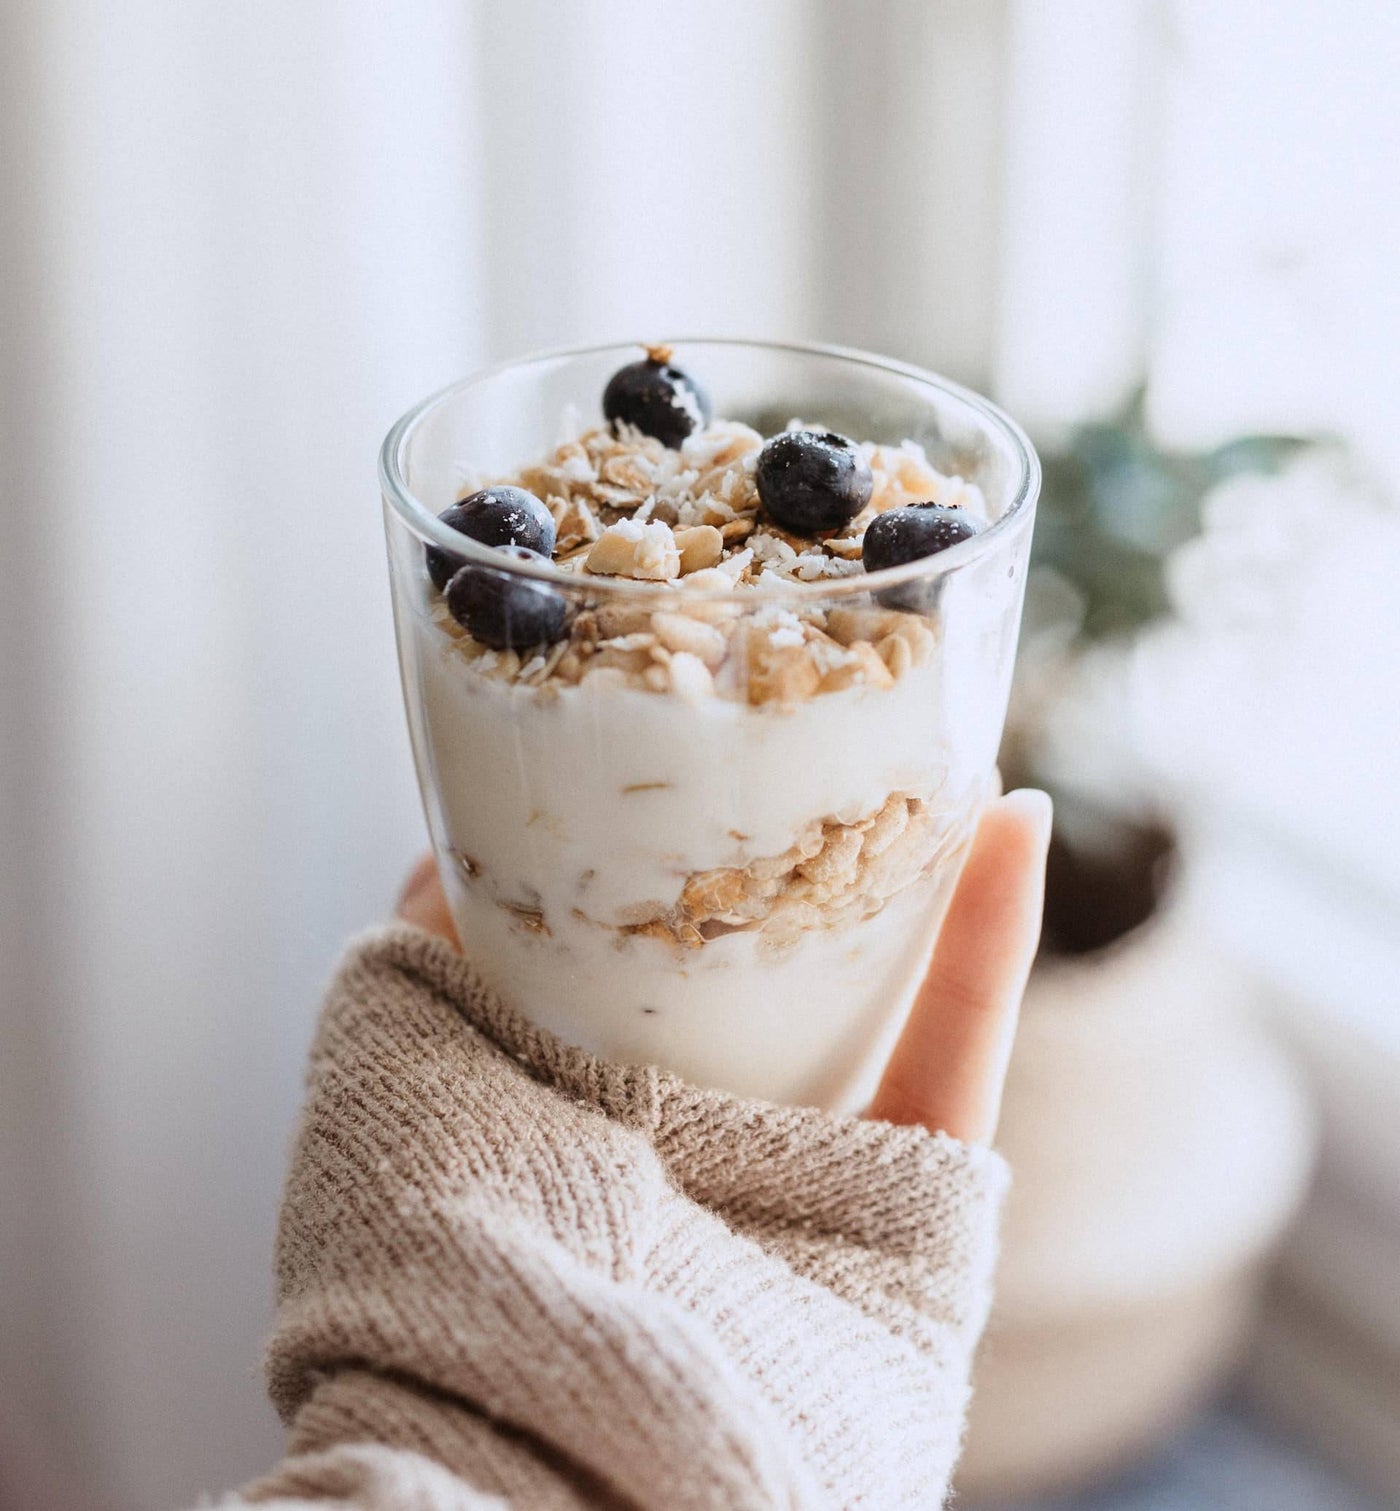 Gesunder Snack: ein Glas voll mit Joghurt, Nüssen und Beeren